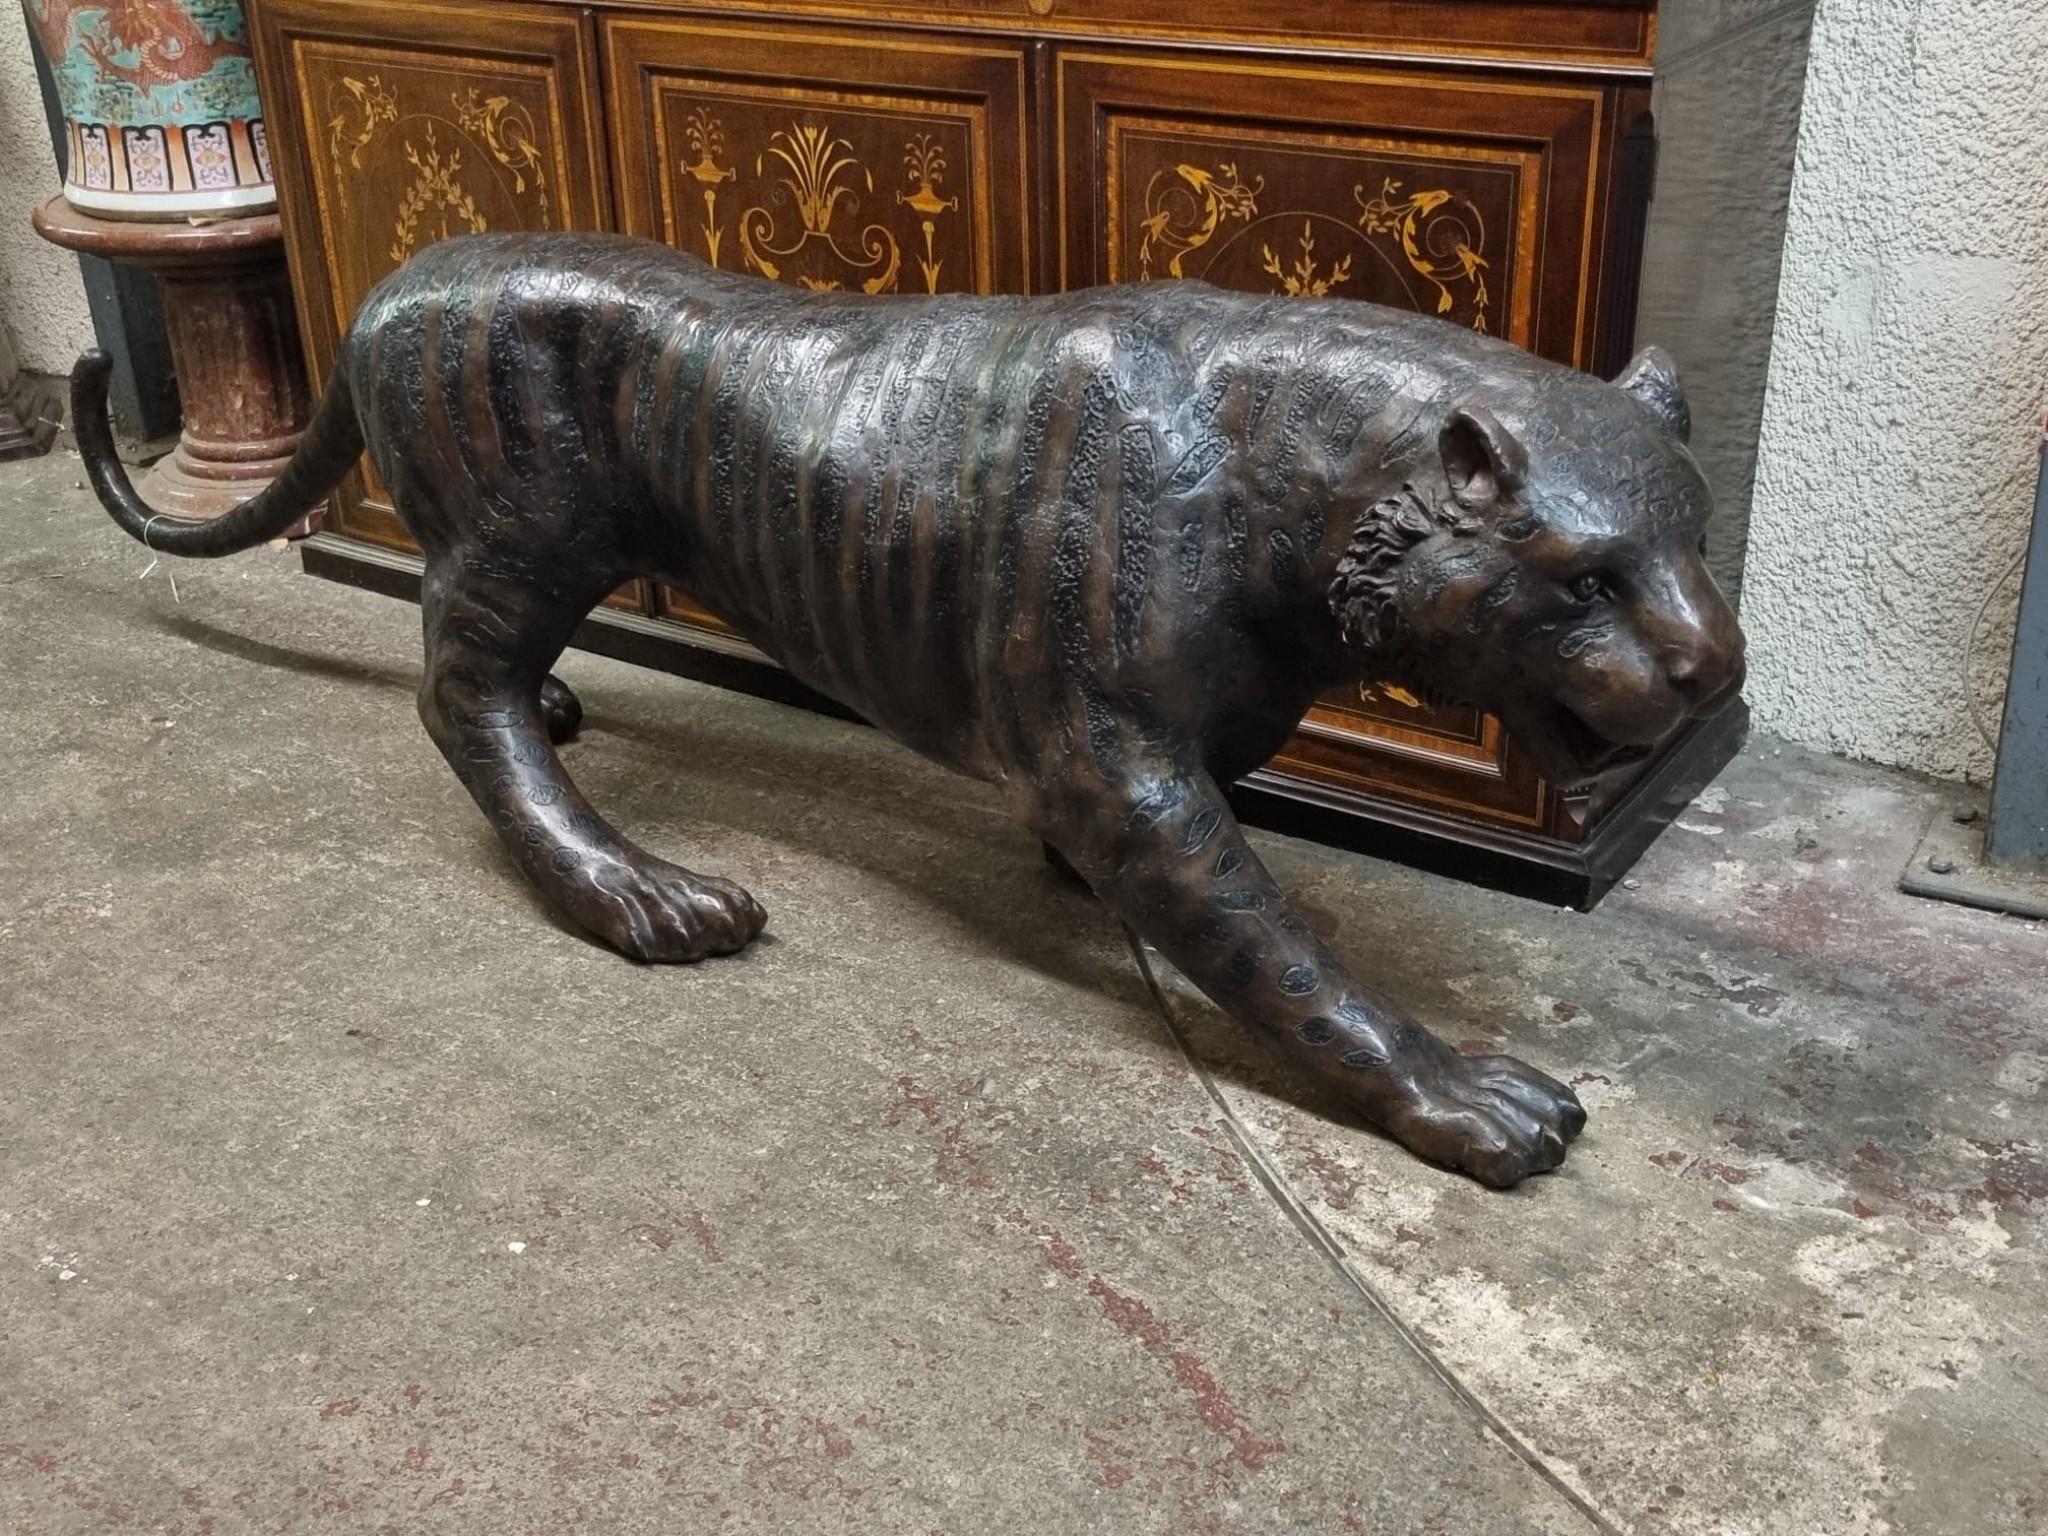 Merveilleuse fonte en bronze d'un chat tigré
Avec plus de deux mentres de la tête à la queue, il est presque grandeur nature.
Disons-le d'emblée, vous ne voudriez pas tomber sur ce produit dans un sentier de la jungle.
J'aime la façon dont les